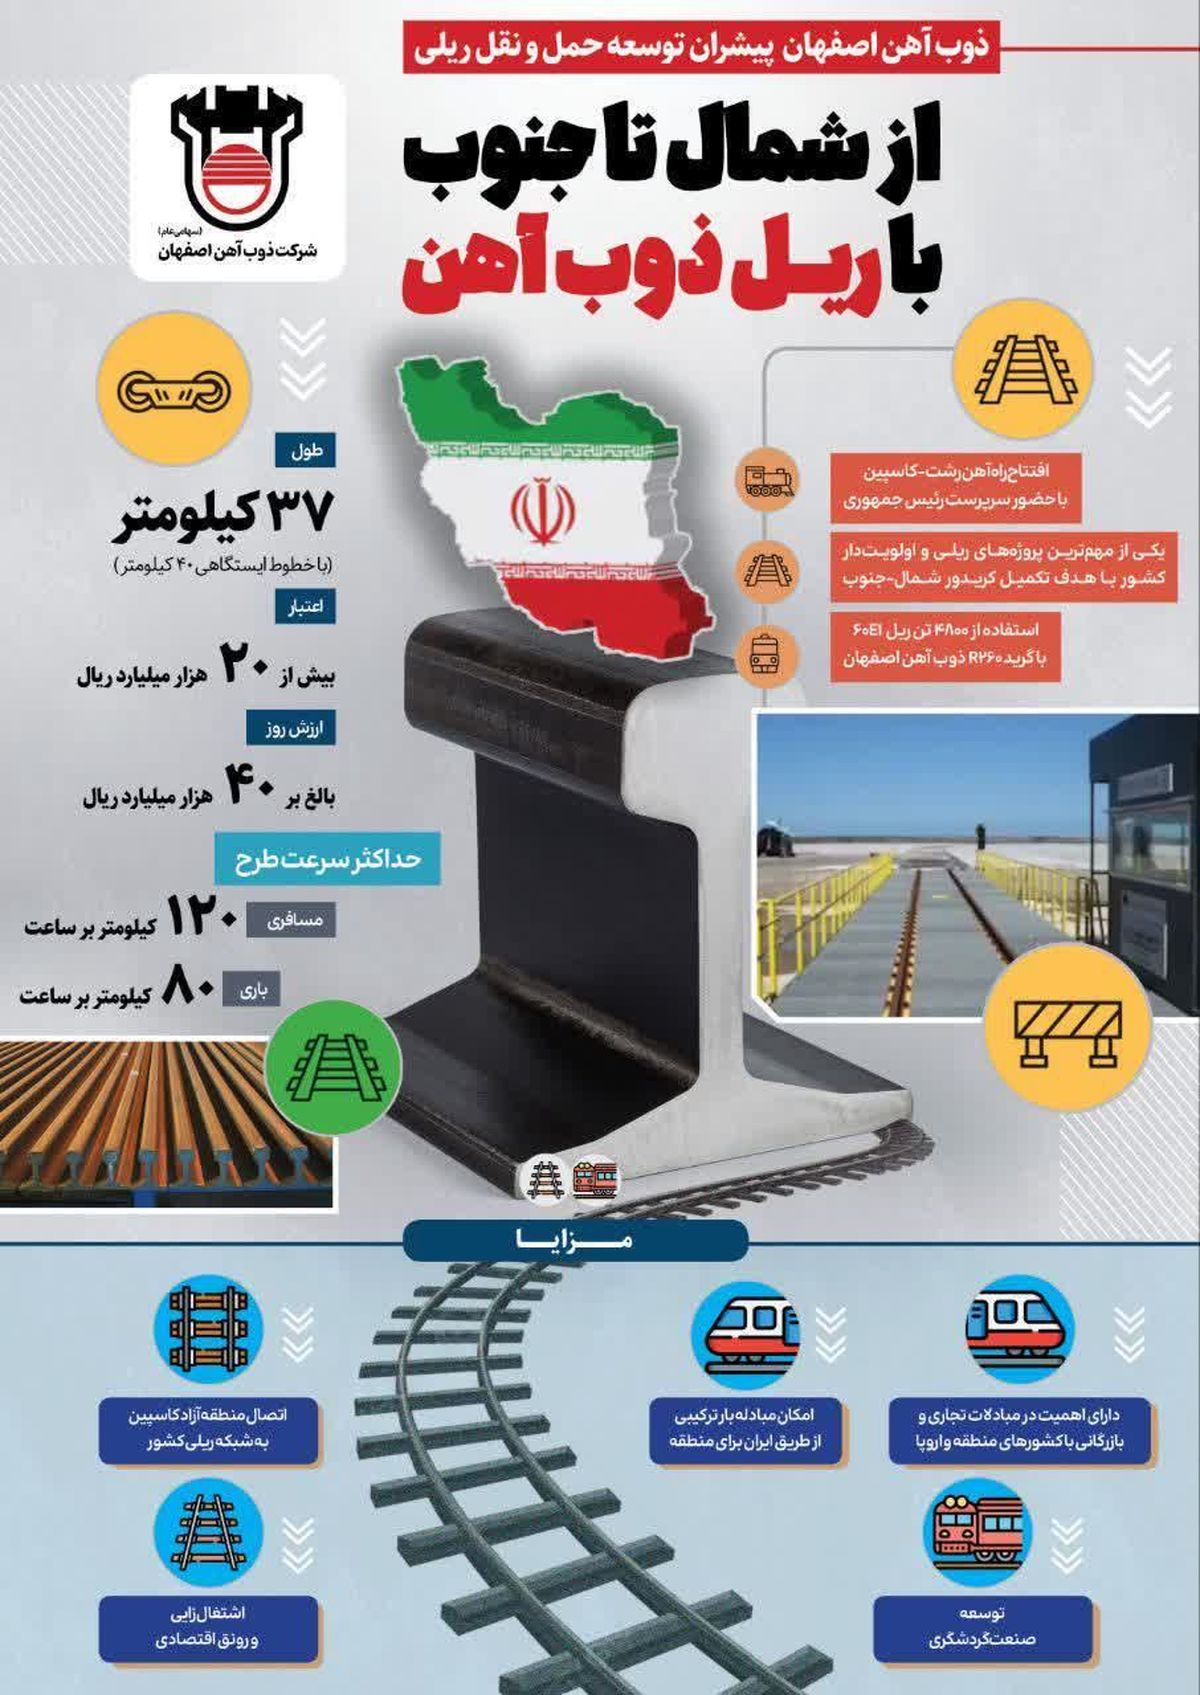 تجارت گردان | اتصال دریا به دریا با ریل ذوب آهن اصفهان